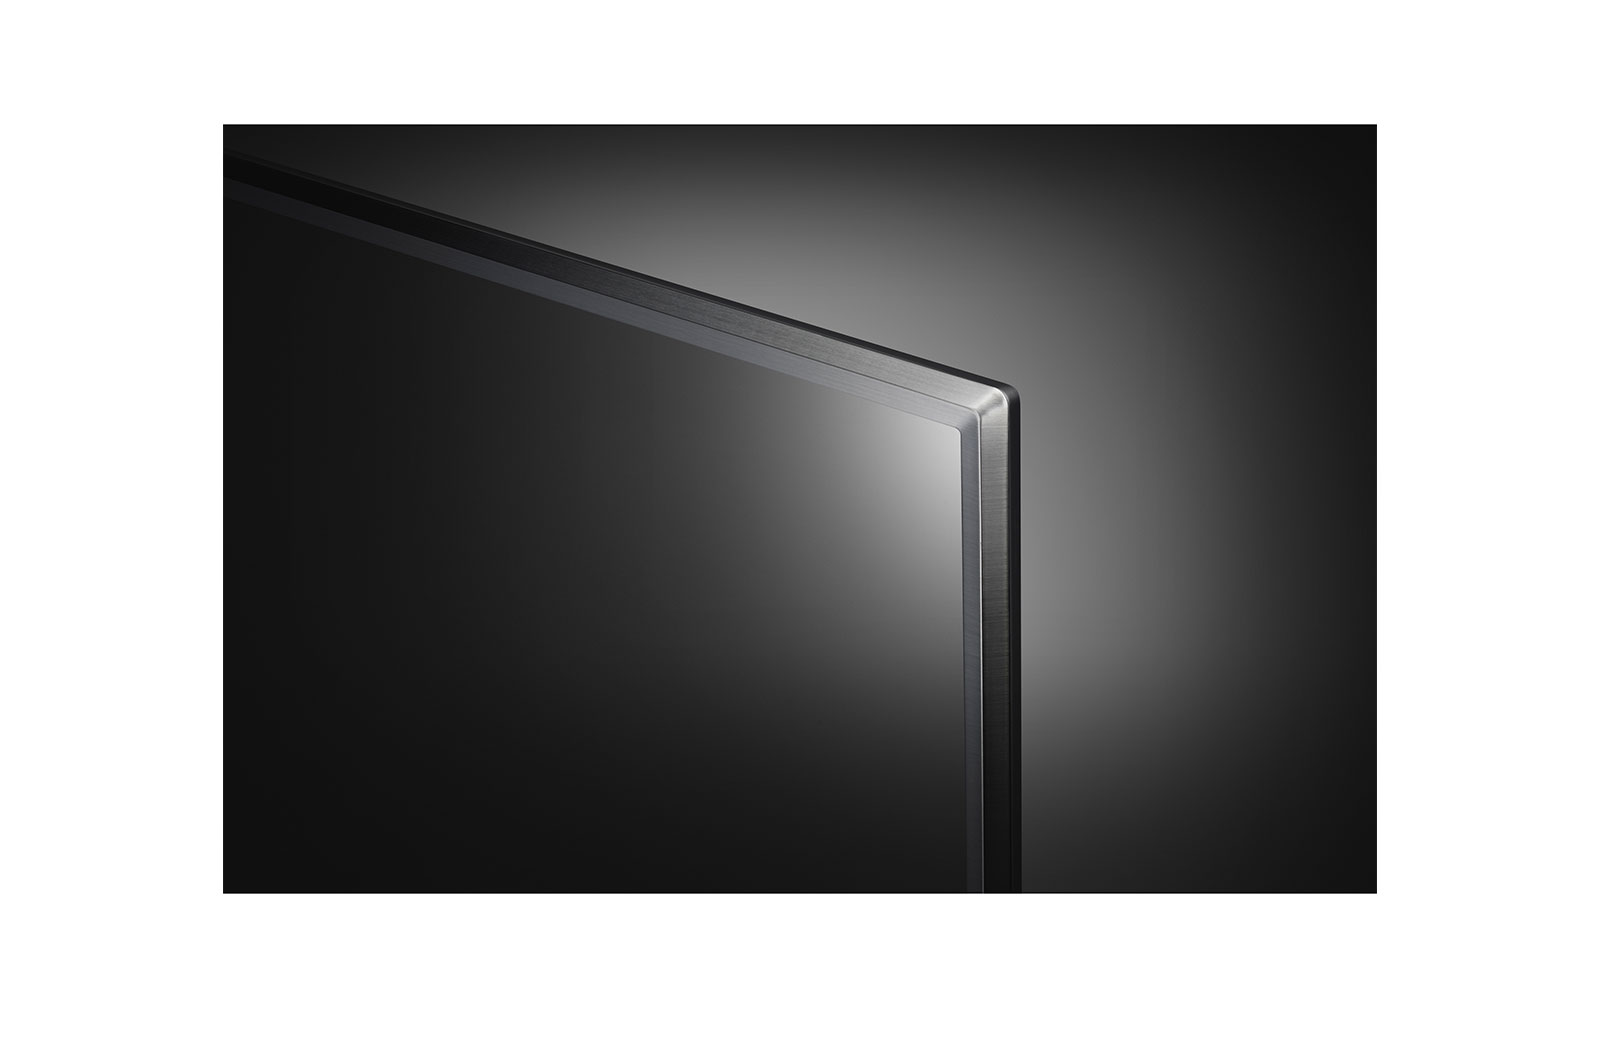 TV LED thông minh LG 75 inch Class 4K HDR AI ThinQ - Hàng chính hãng